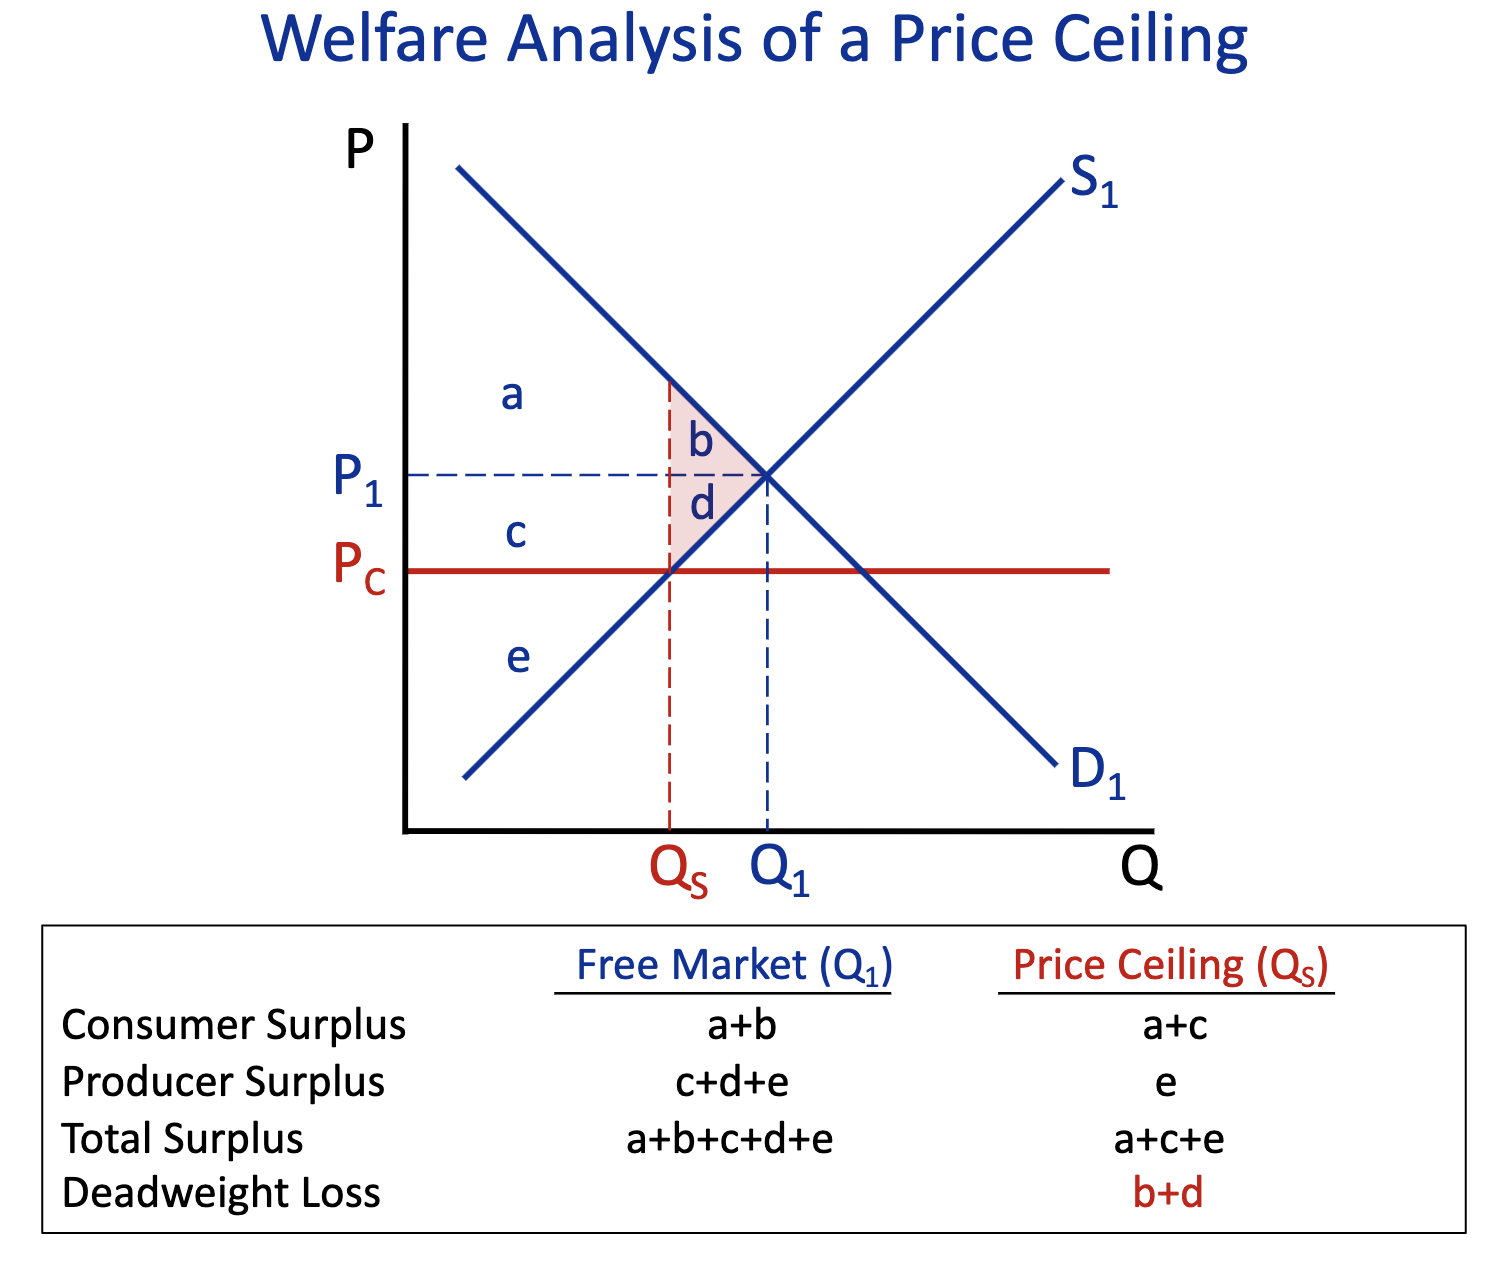 <p>Free Market (Q1) : a+b</p><p>Price Ceiling (Q2) : a+c</p>